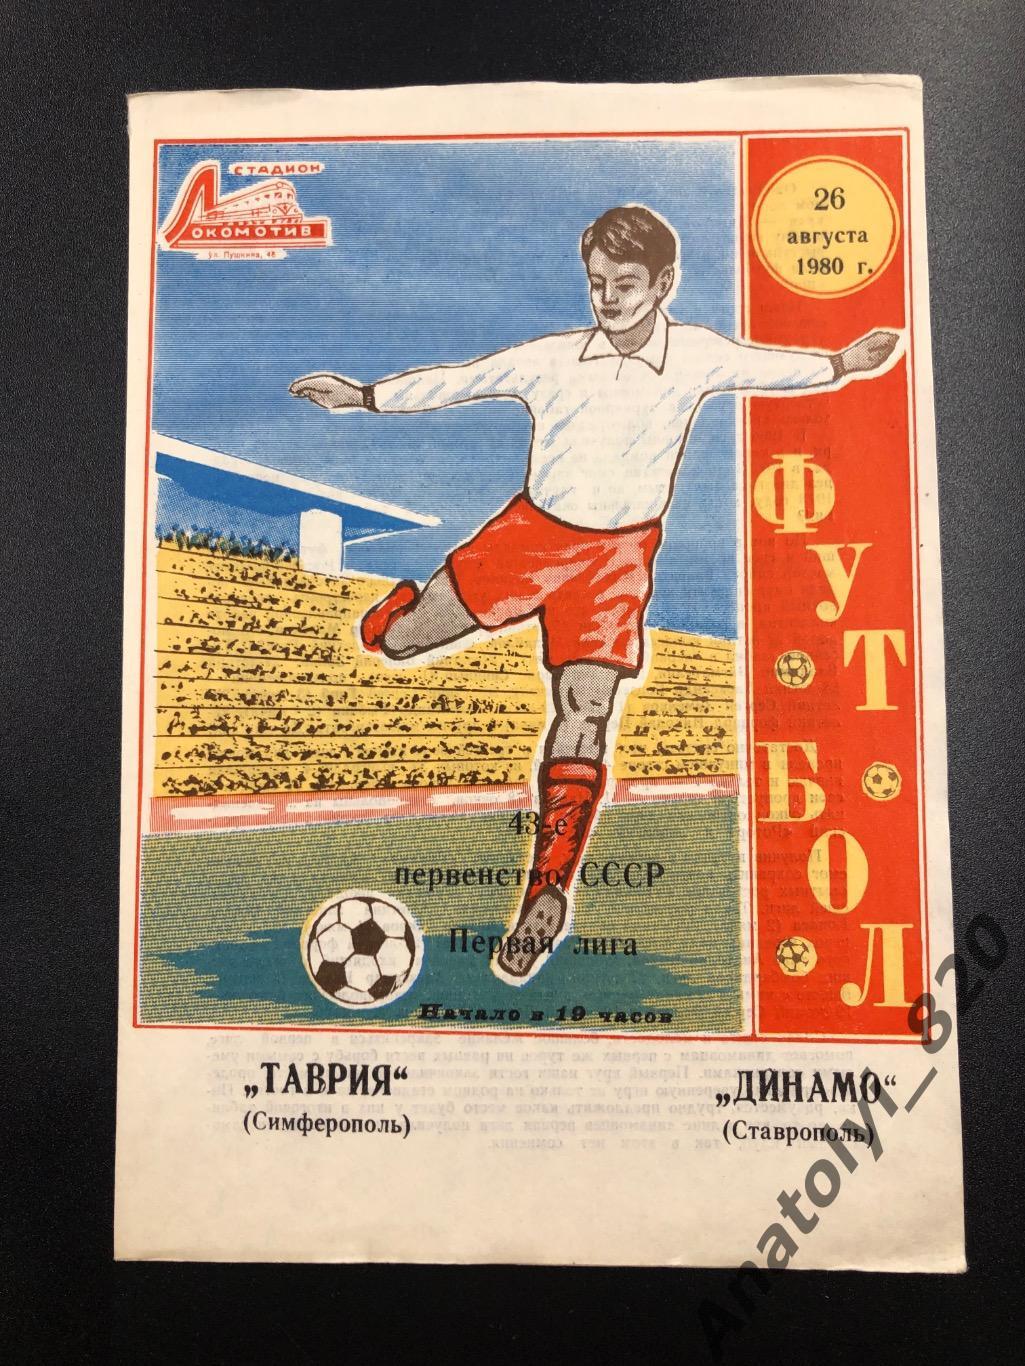 Таврия Симферополь - Динамо Ставрополь 1980 год